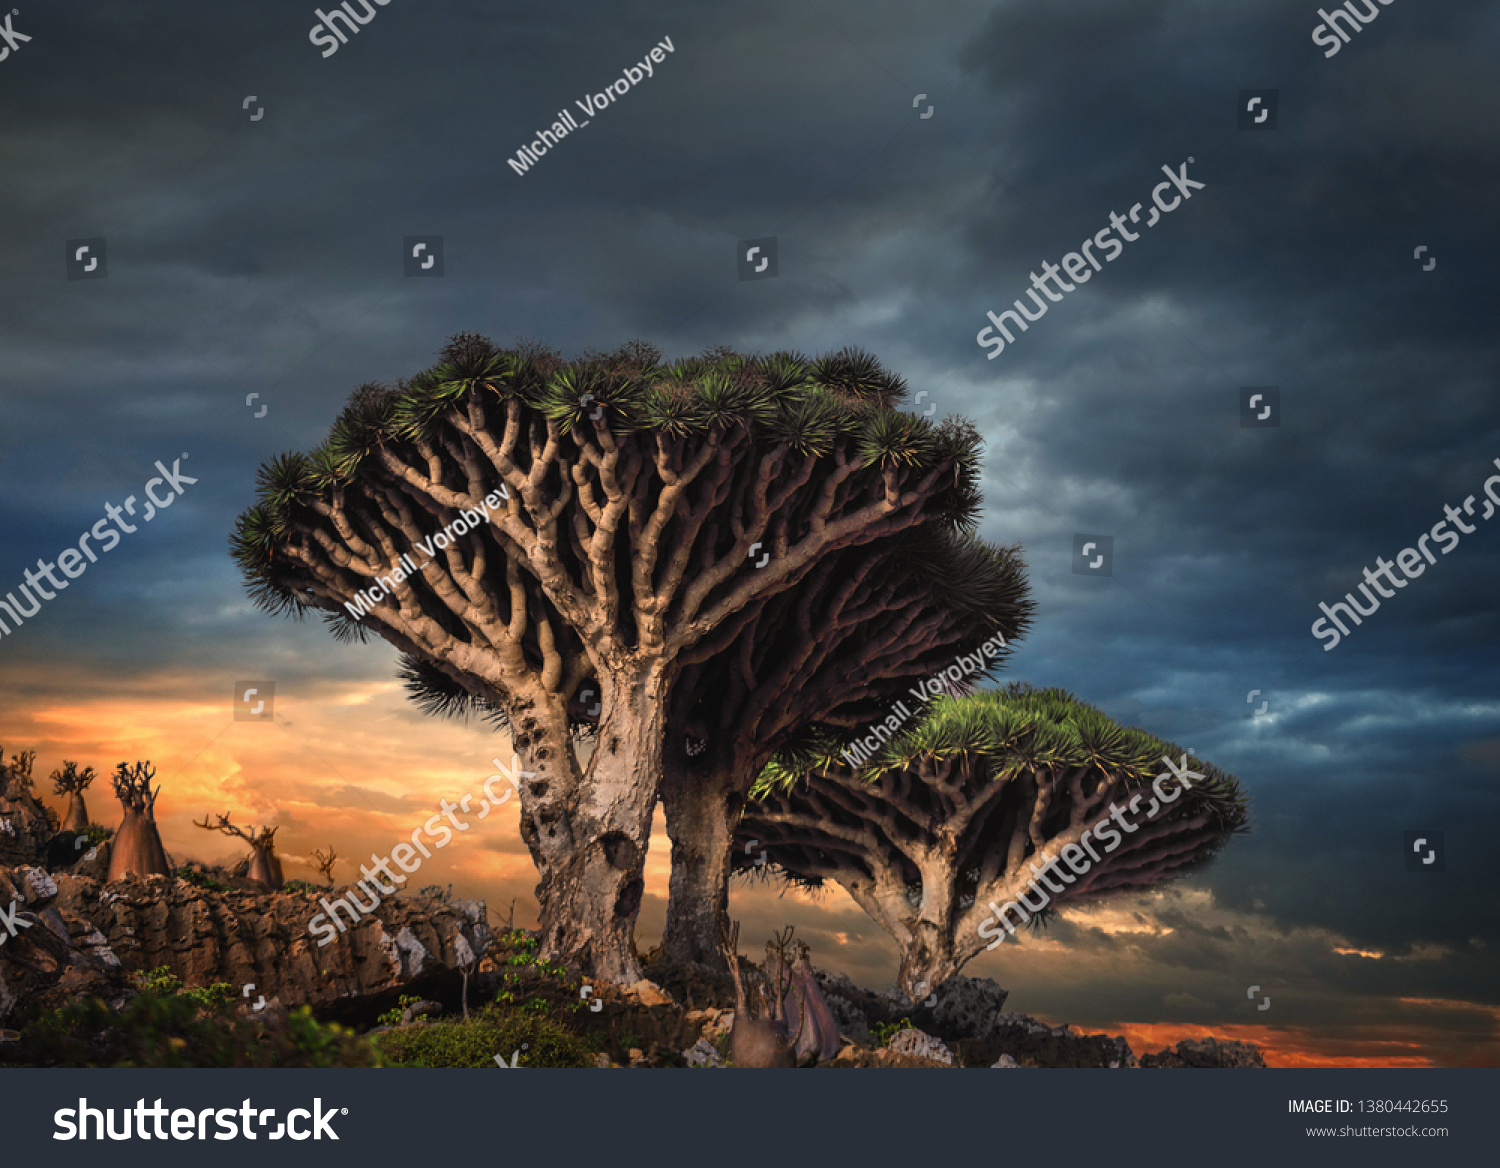 イエメン ソコトラ島 ディクサム高原のドラゴンツリー の写真素材 今すぐ編集